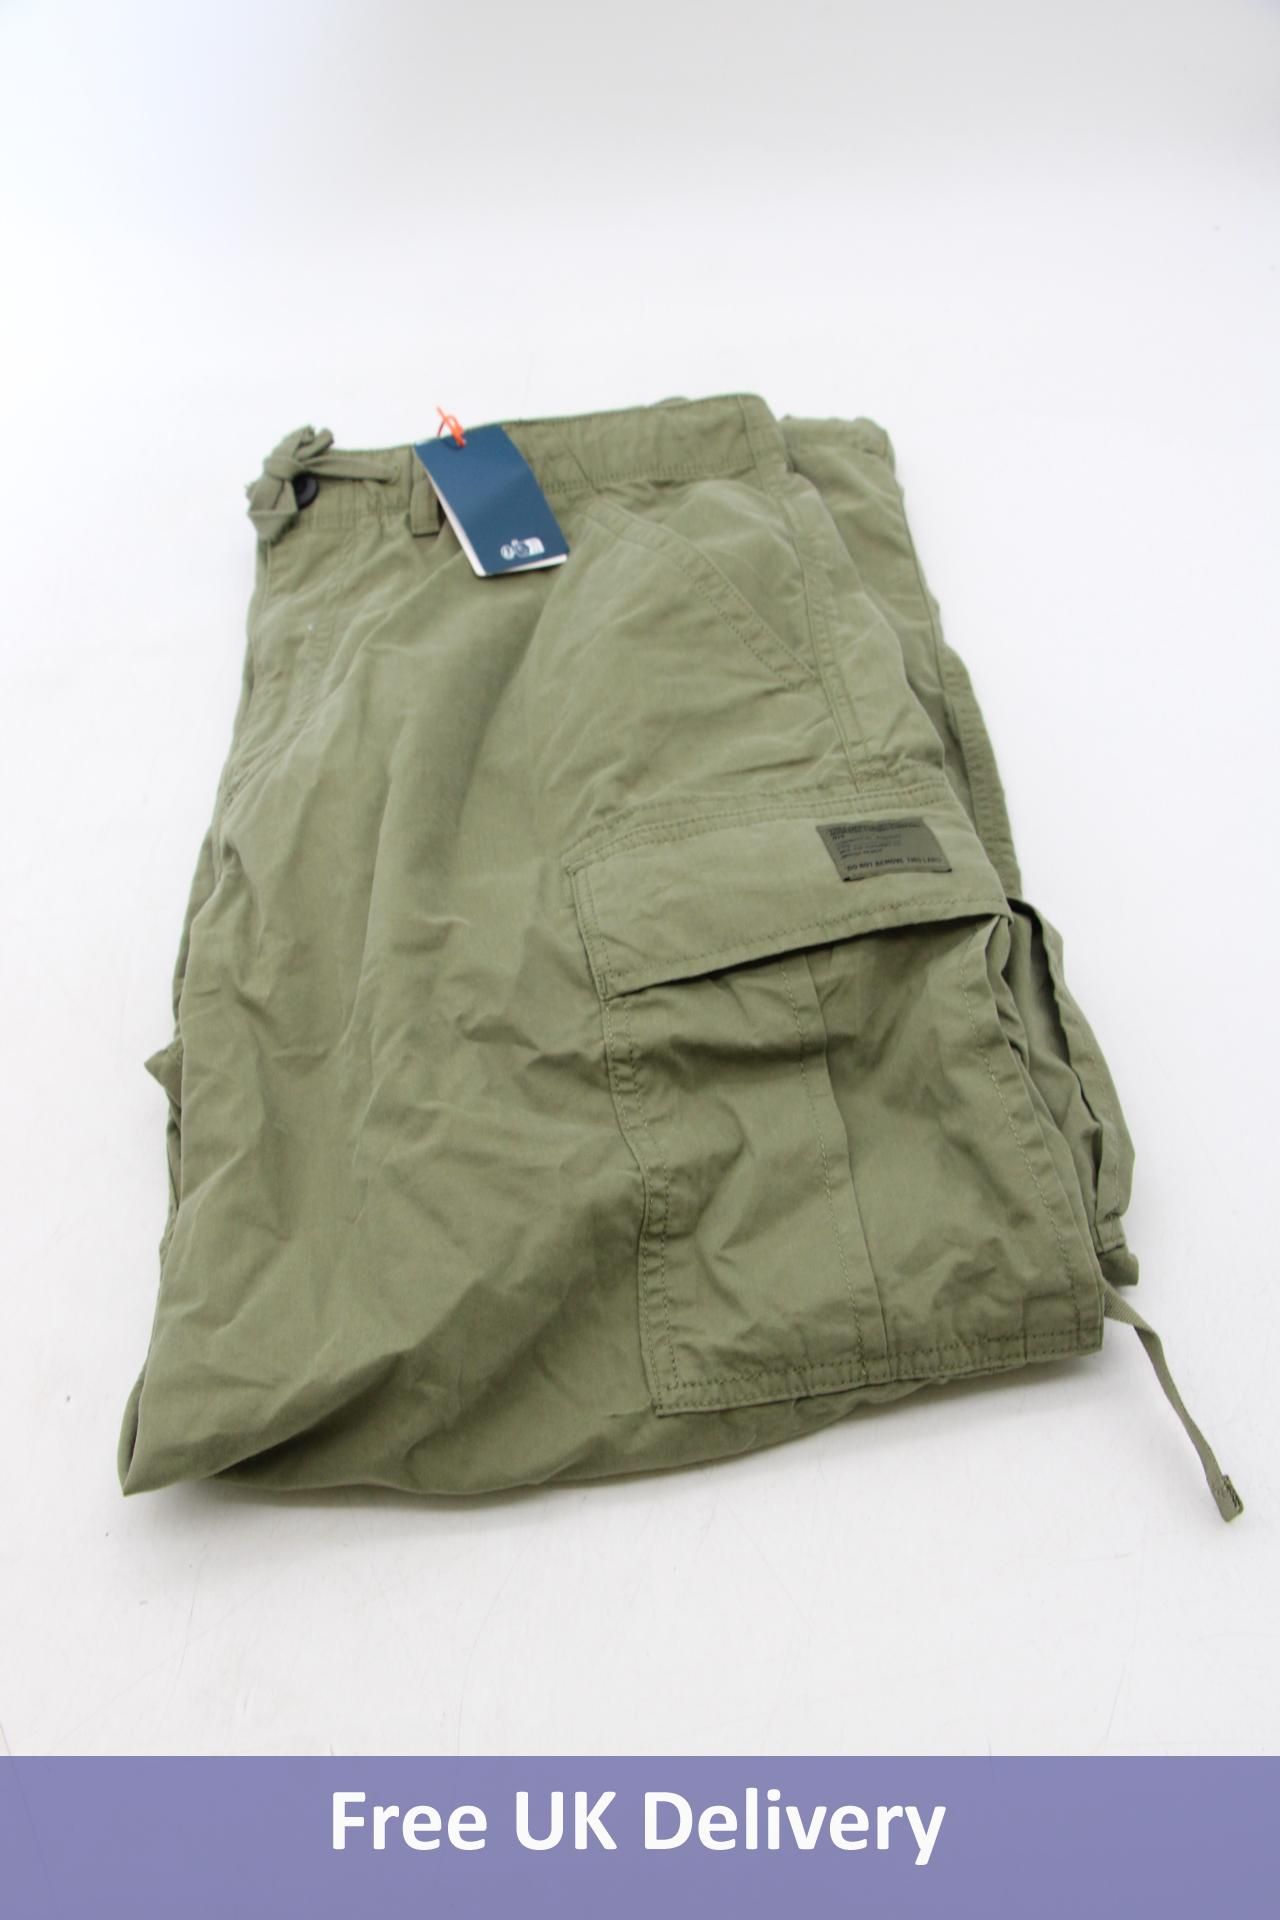 Superdry Vintage Para Cargo Pants, Hushed Olive, Size W36/L32